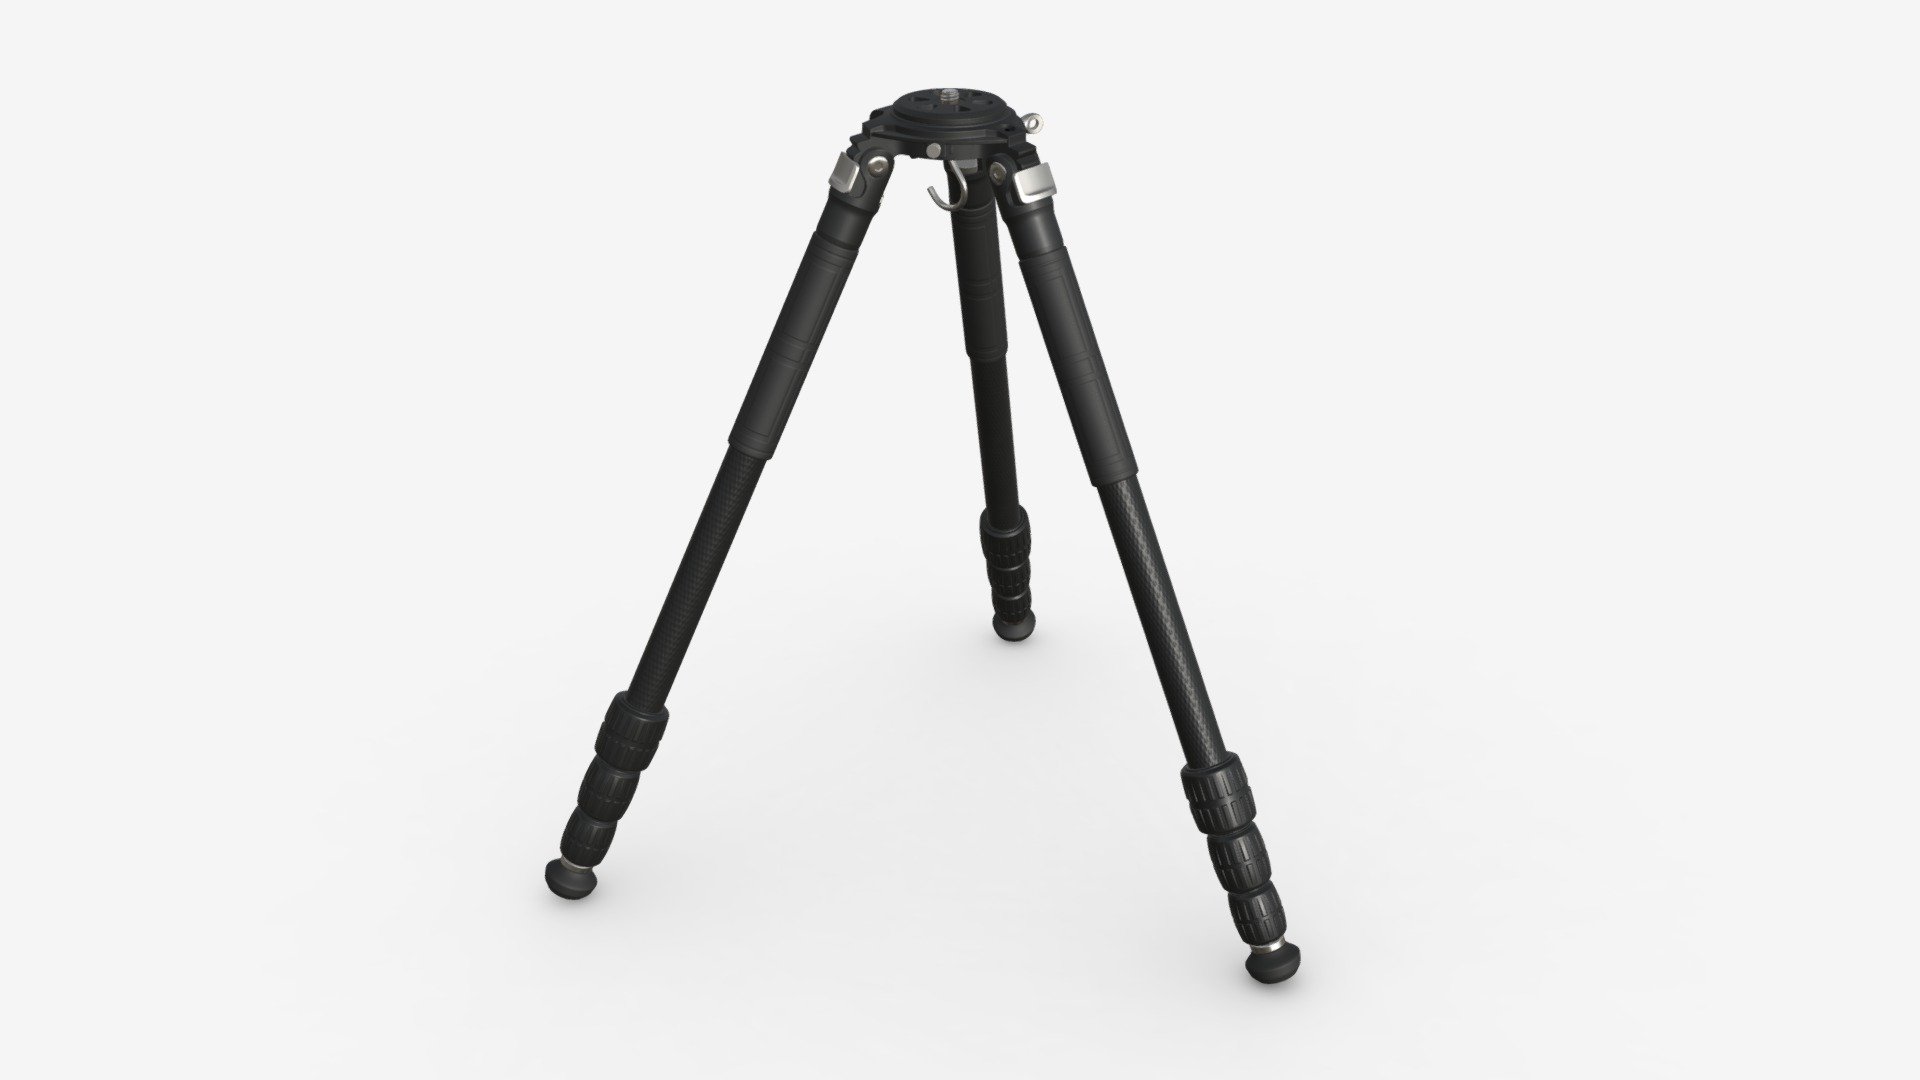 Carbon fiber camera tripod 02 - Buy Royalty Free 3D model by HQ3DMOD (@AivisAstics) 3d model